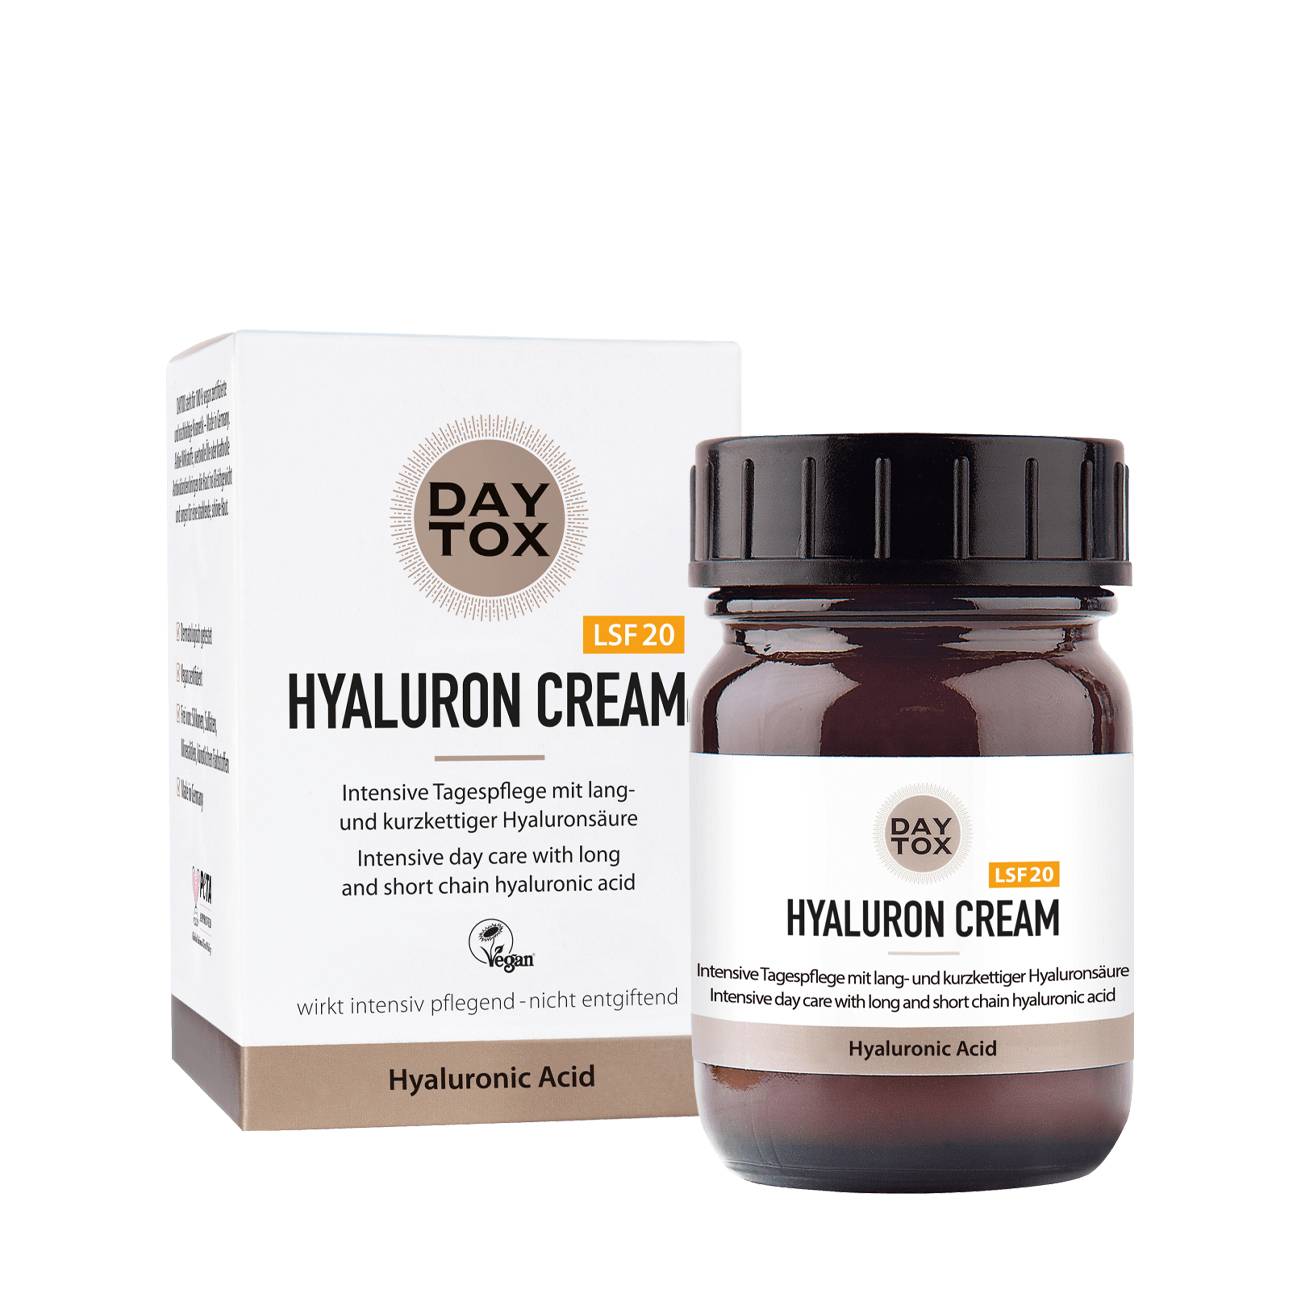 Hyaluron Cream 50 ml Daytox bestvalue.eu imagine noua